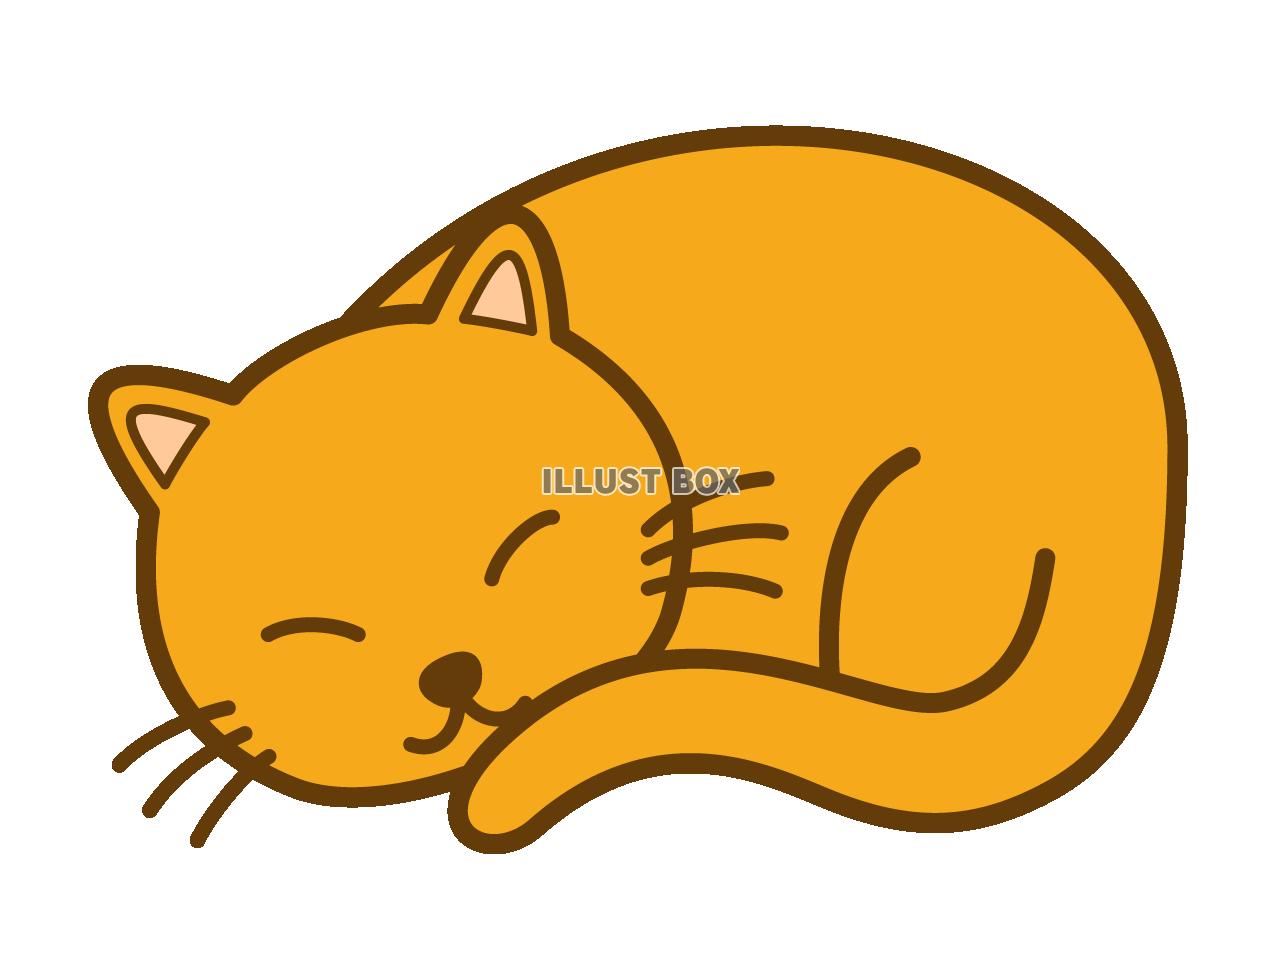 コンプリート かわいい 眠り 猫 イラスト 簡単 100 ベストミキシング写真 イラストレーション